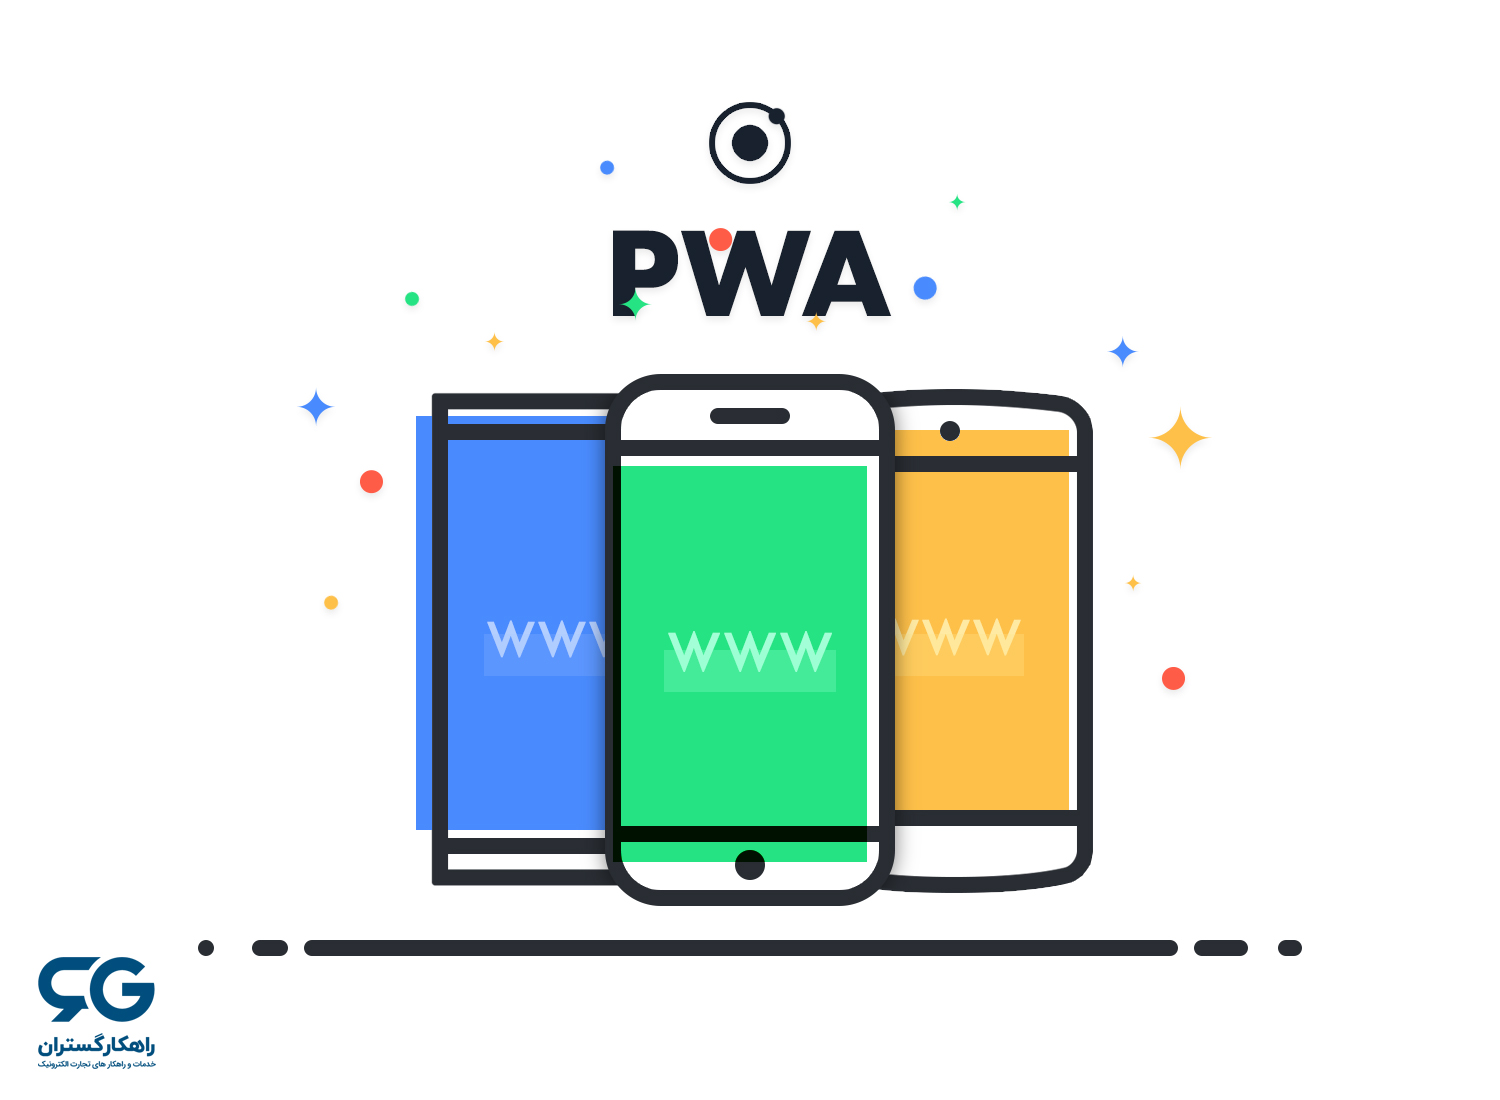 PWA یا وب اپلیکیشن پیش رونده چیست؟